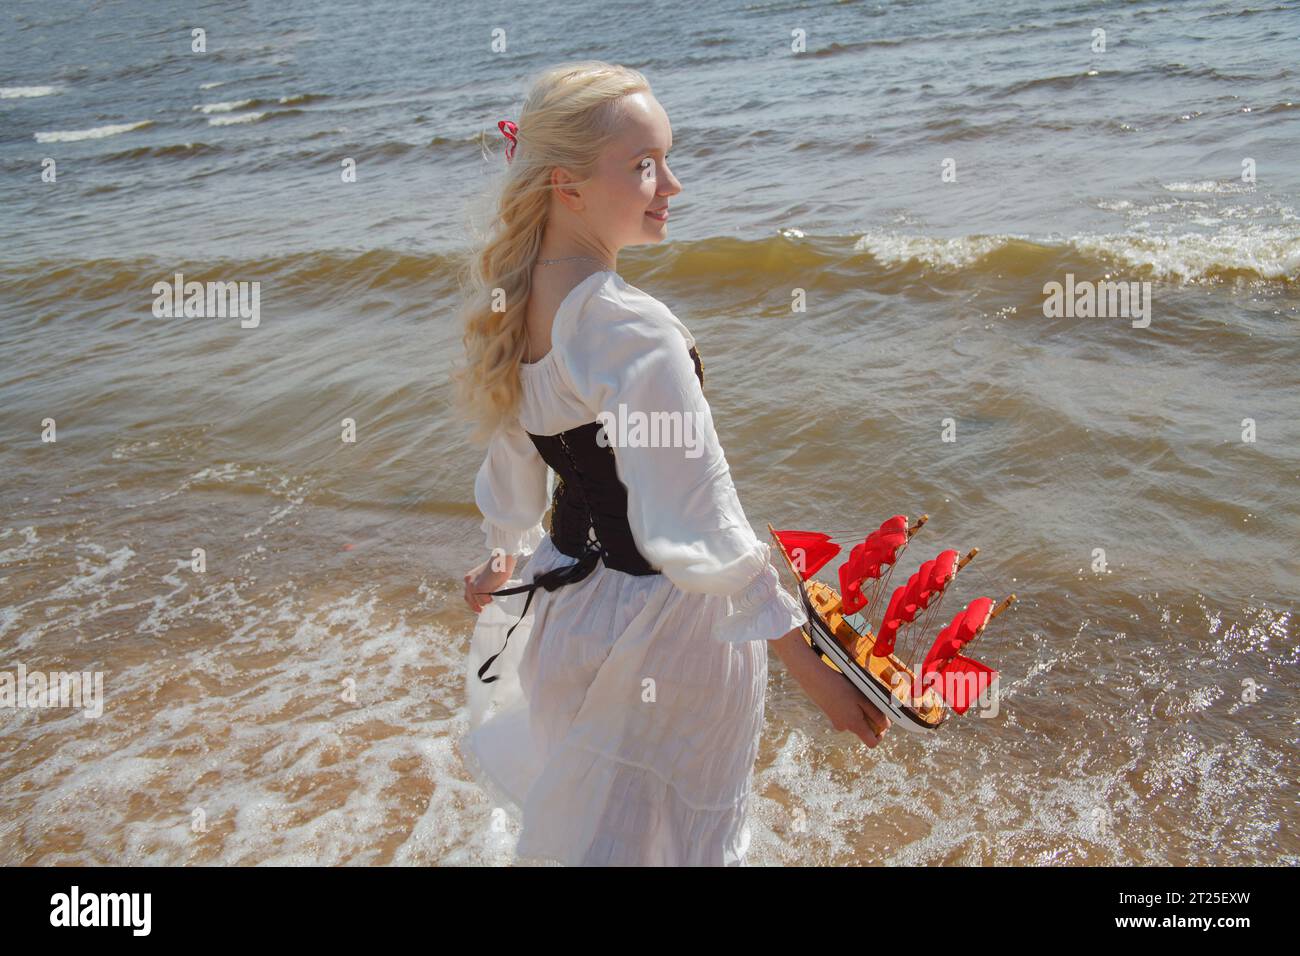 Bella giovane donna con i capelli biondi sul mare, ritratto all'aperto Foto Stock